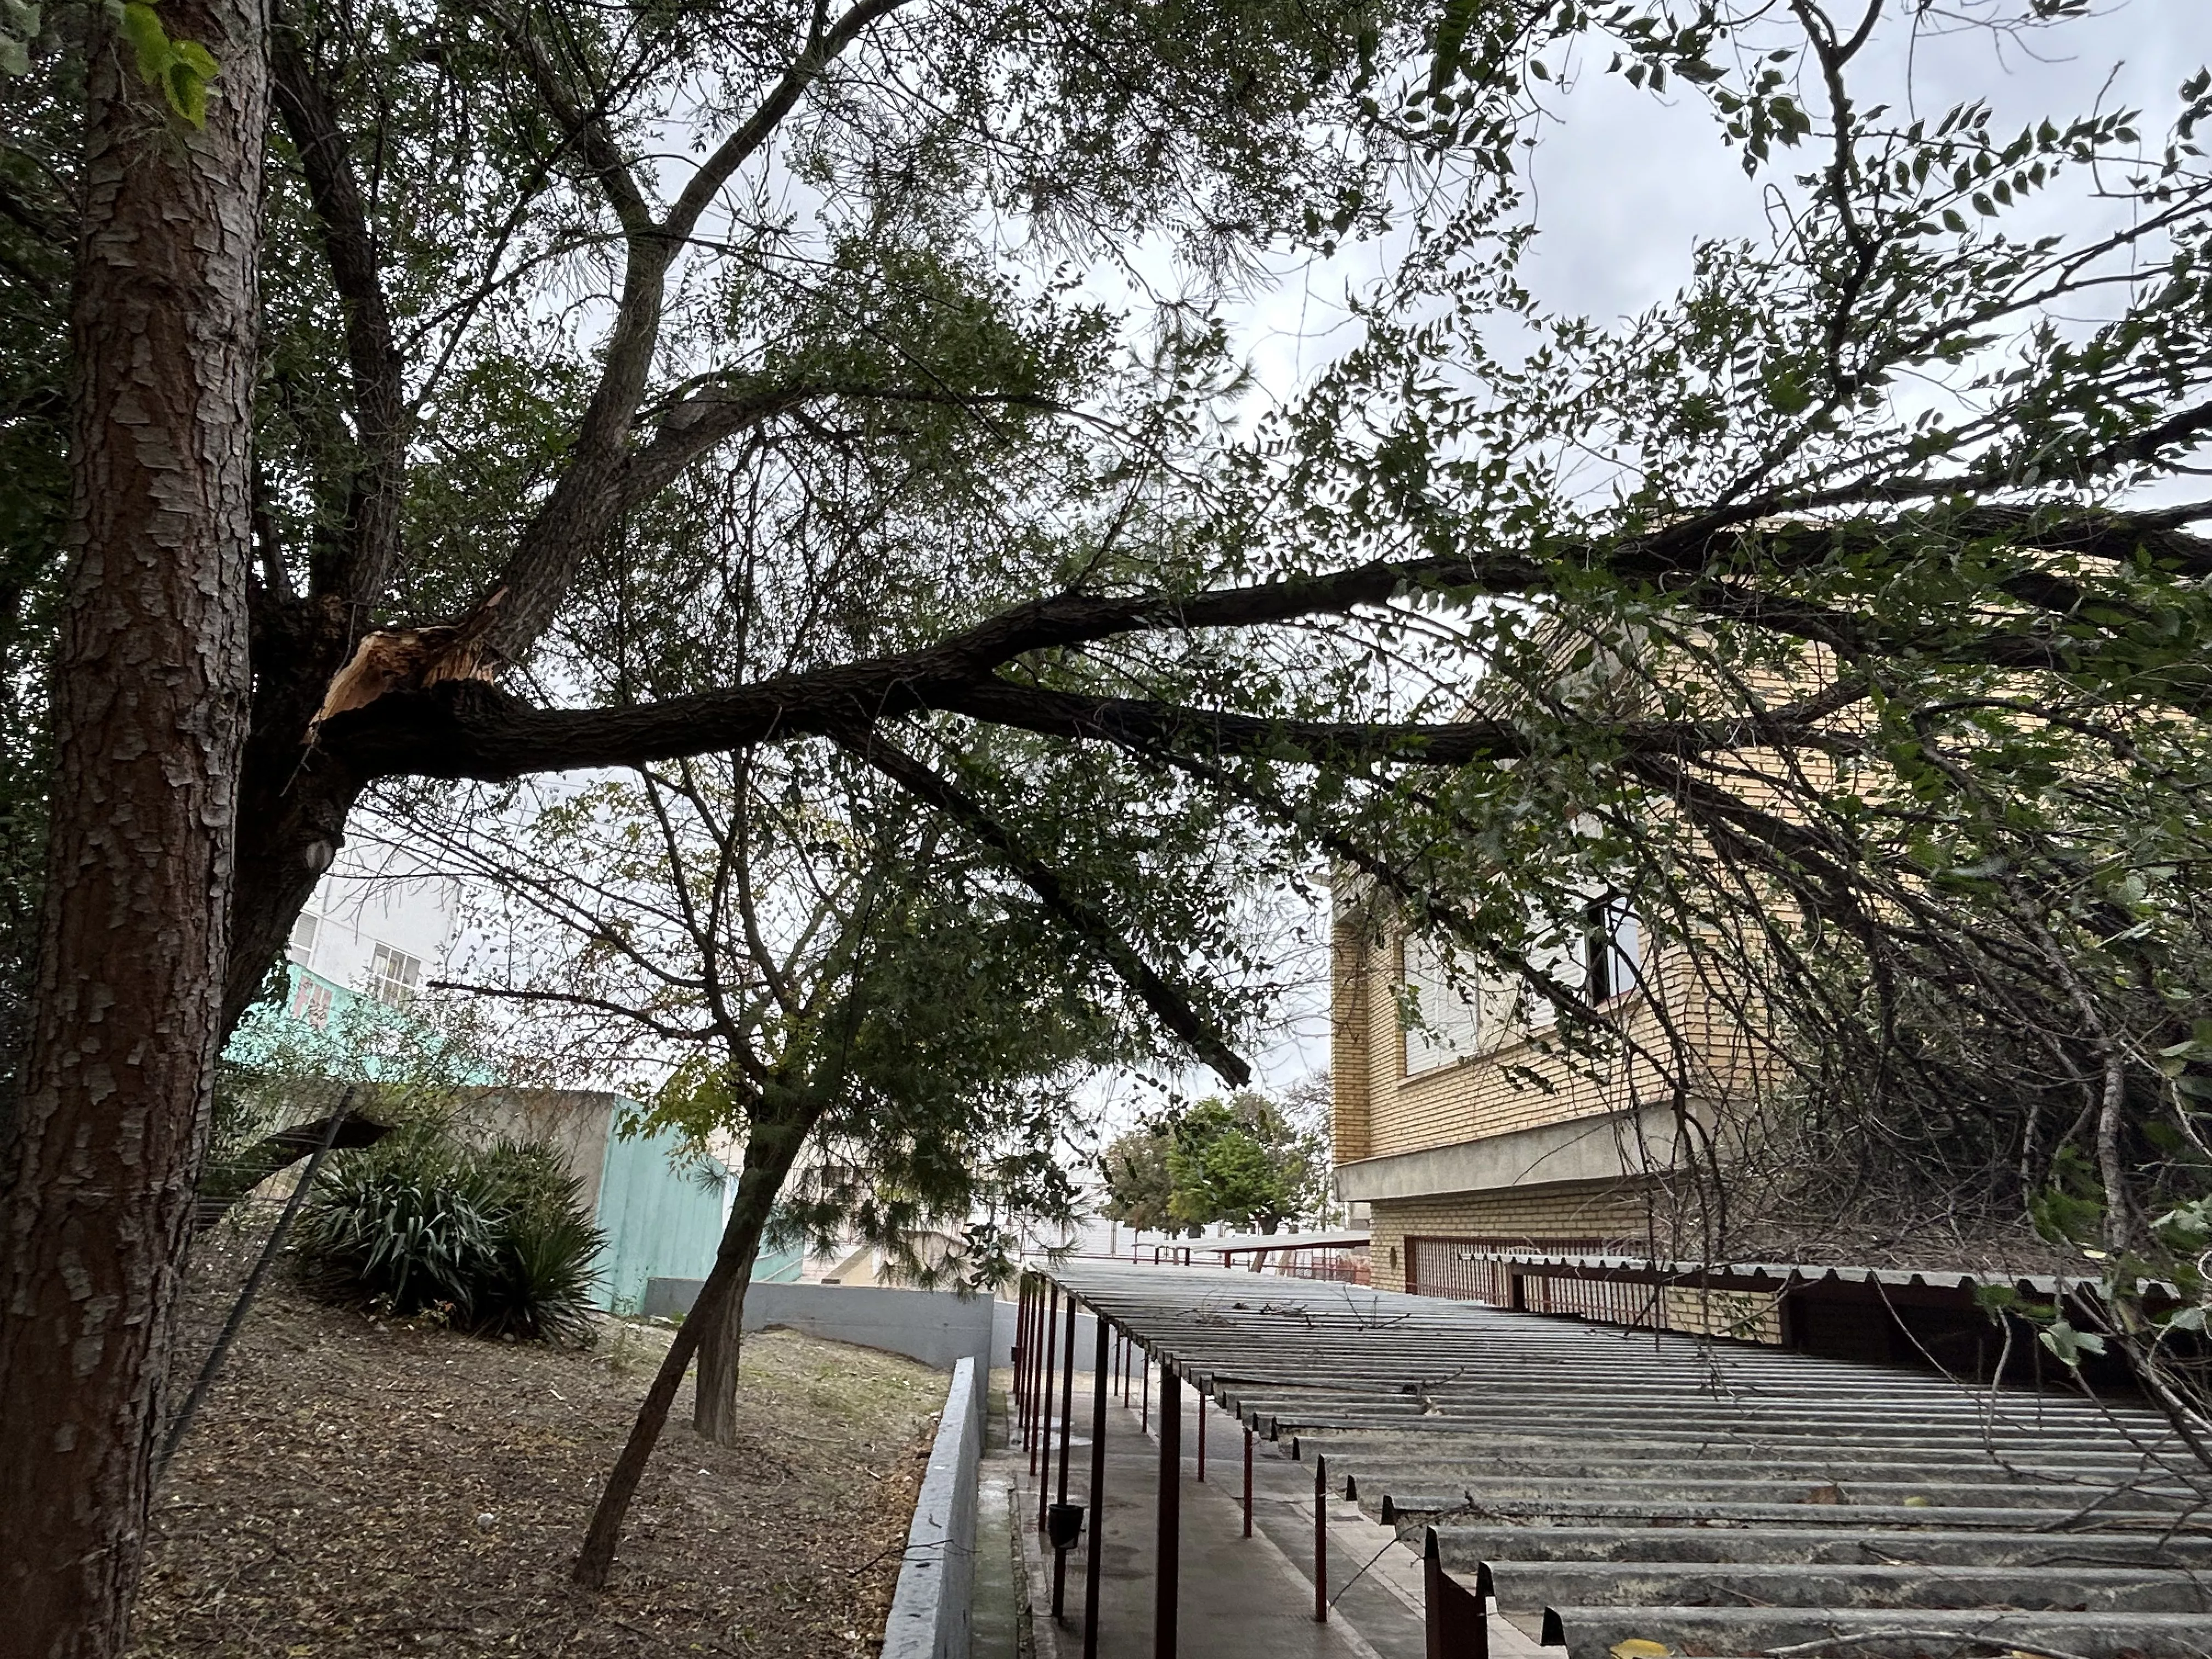 En el colegio El Carmen una rama ha caído sobre la estructura que protege la entrada a uno de los módulos escolares